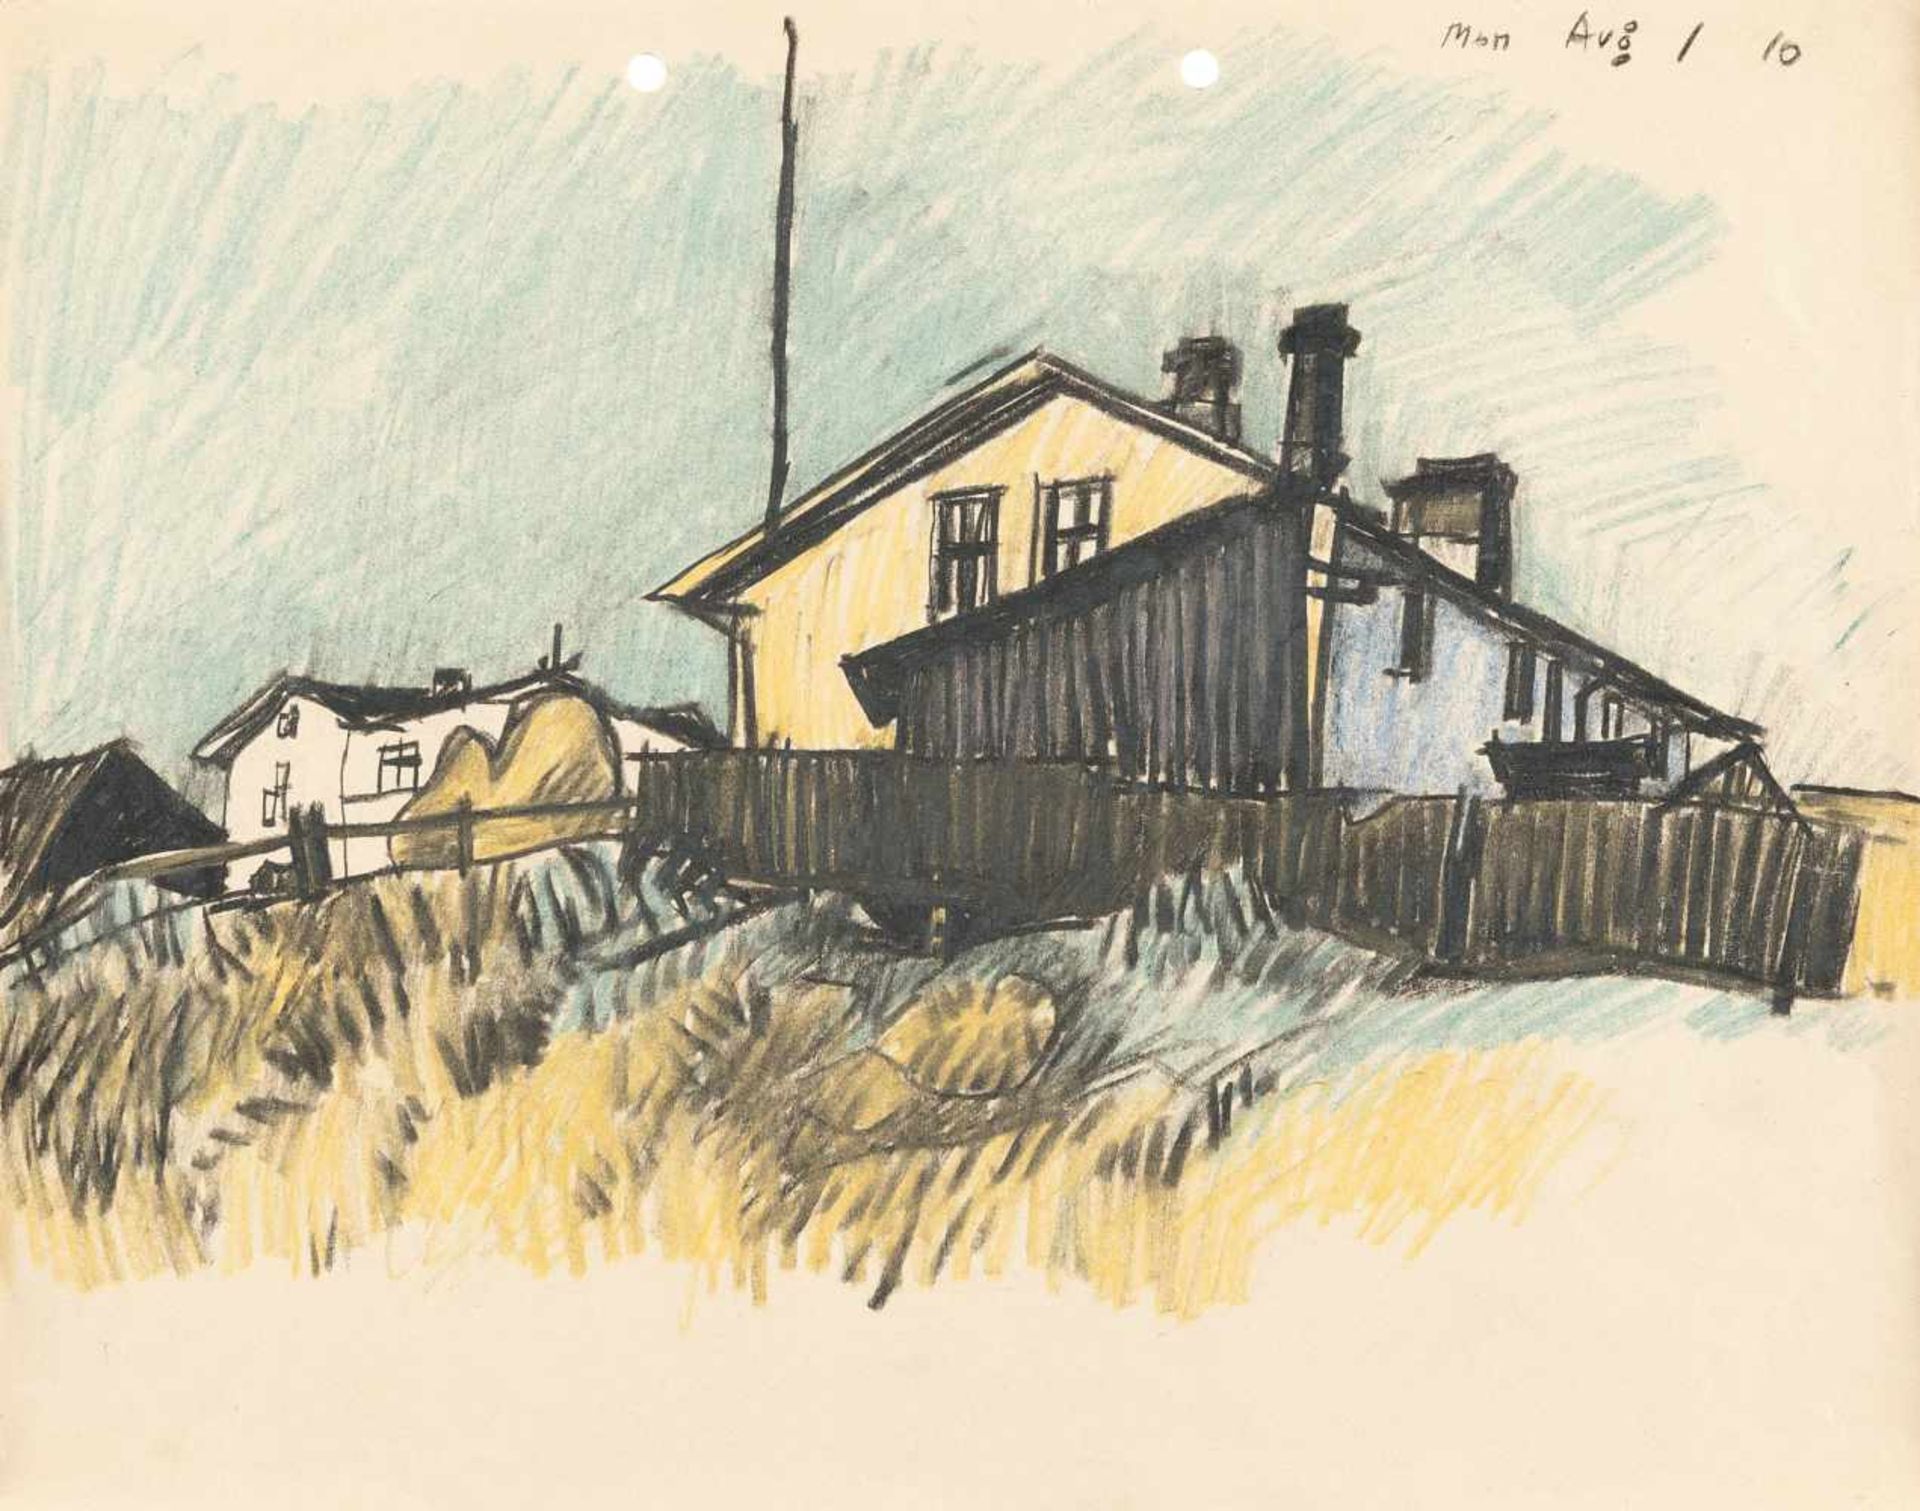 zurückgezogenLyonel Feininger 1871 - New York - 1956 Houses of Usedom Coloured pencil on fine